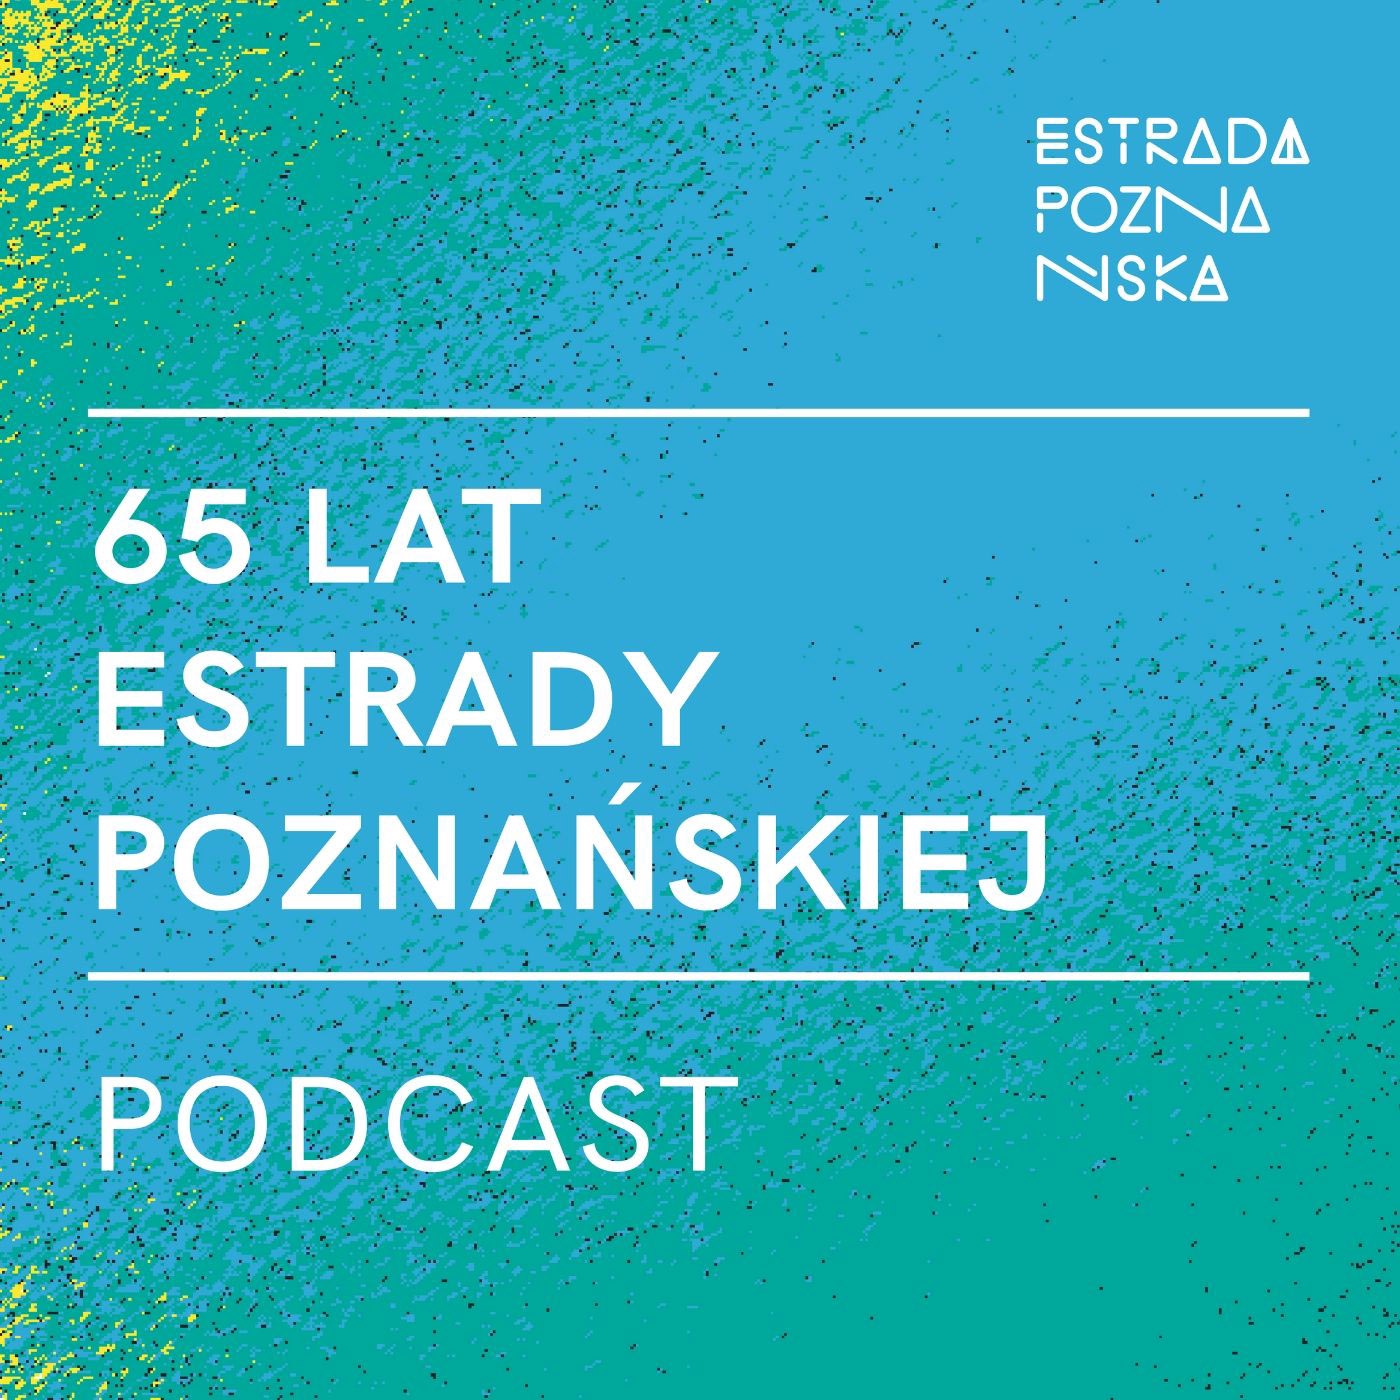 65 lat Estrady Poznańskiej